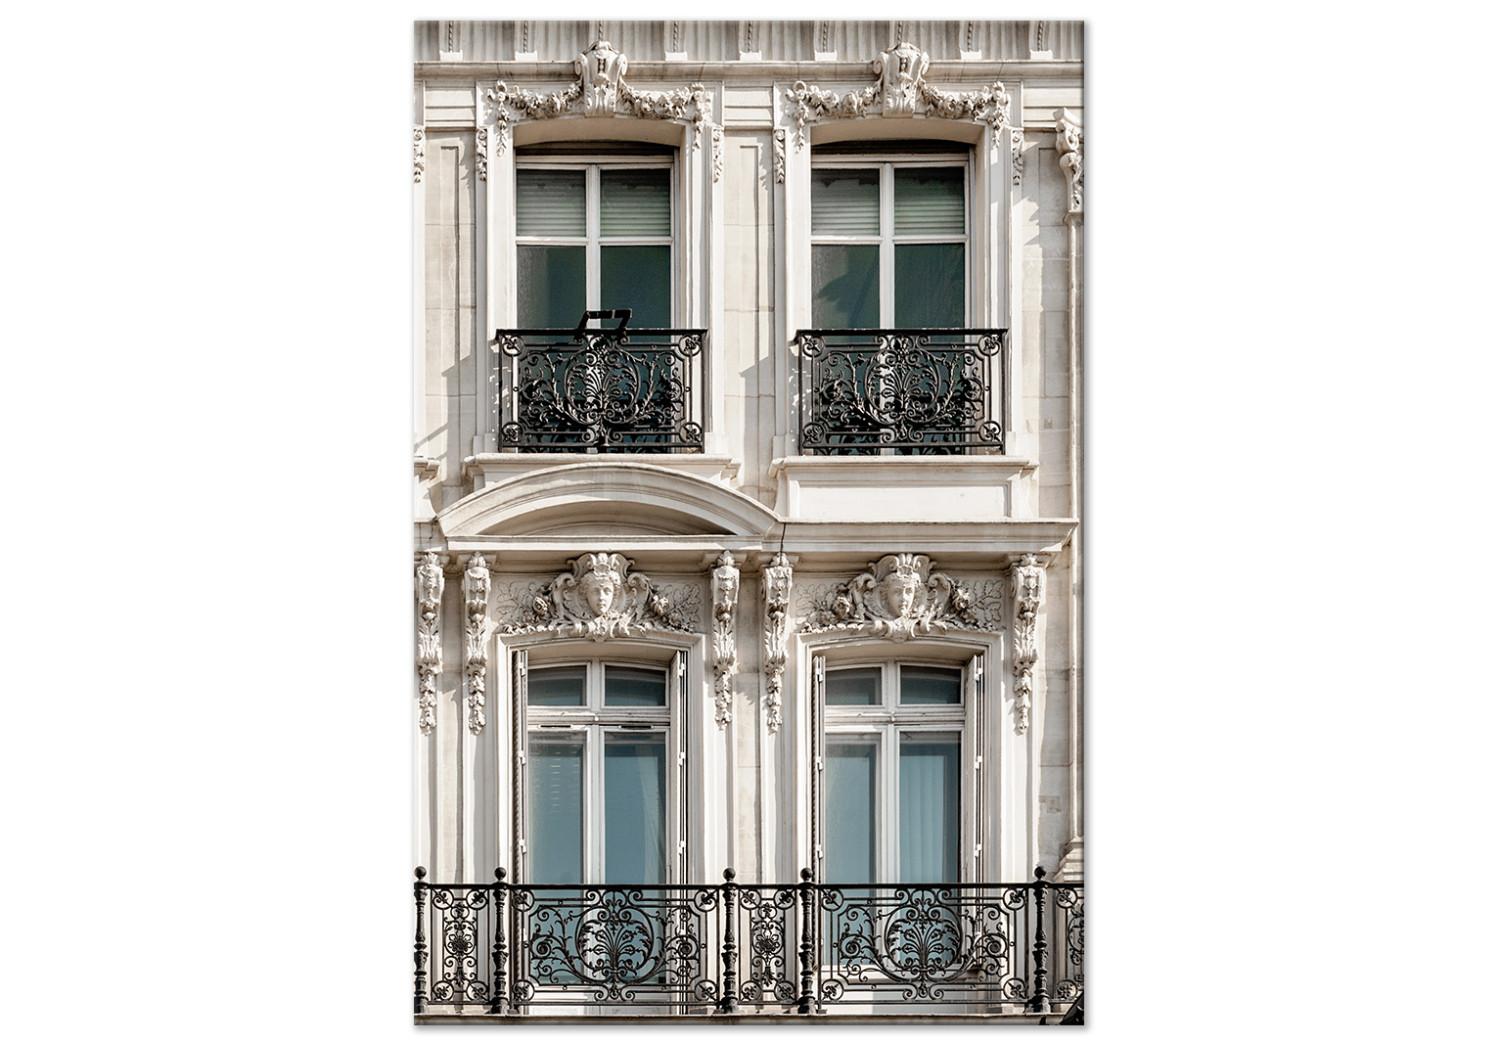 Cuadro decorativo Ventanas en una casa - foto de la arquitectura de la capital francesa